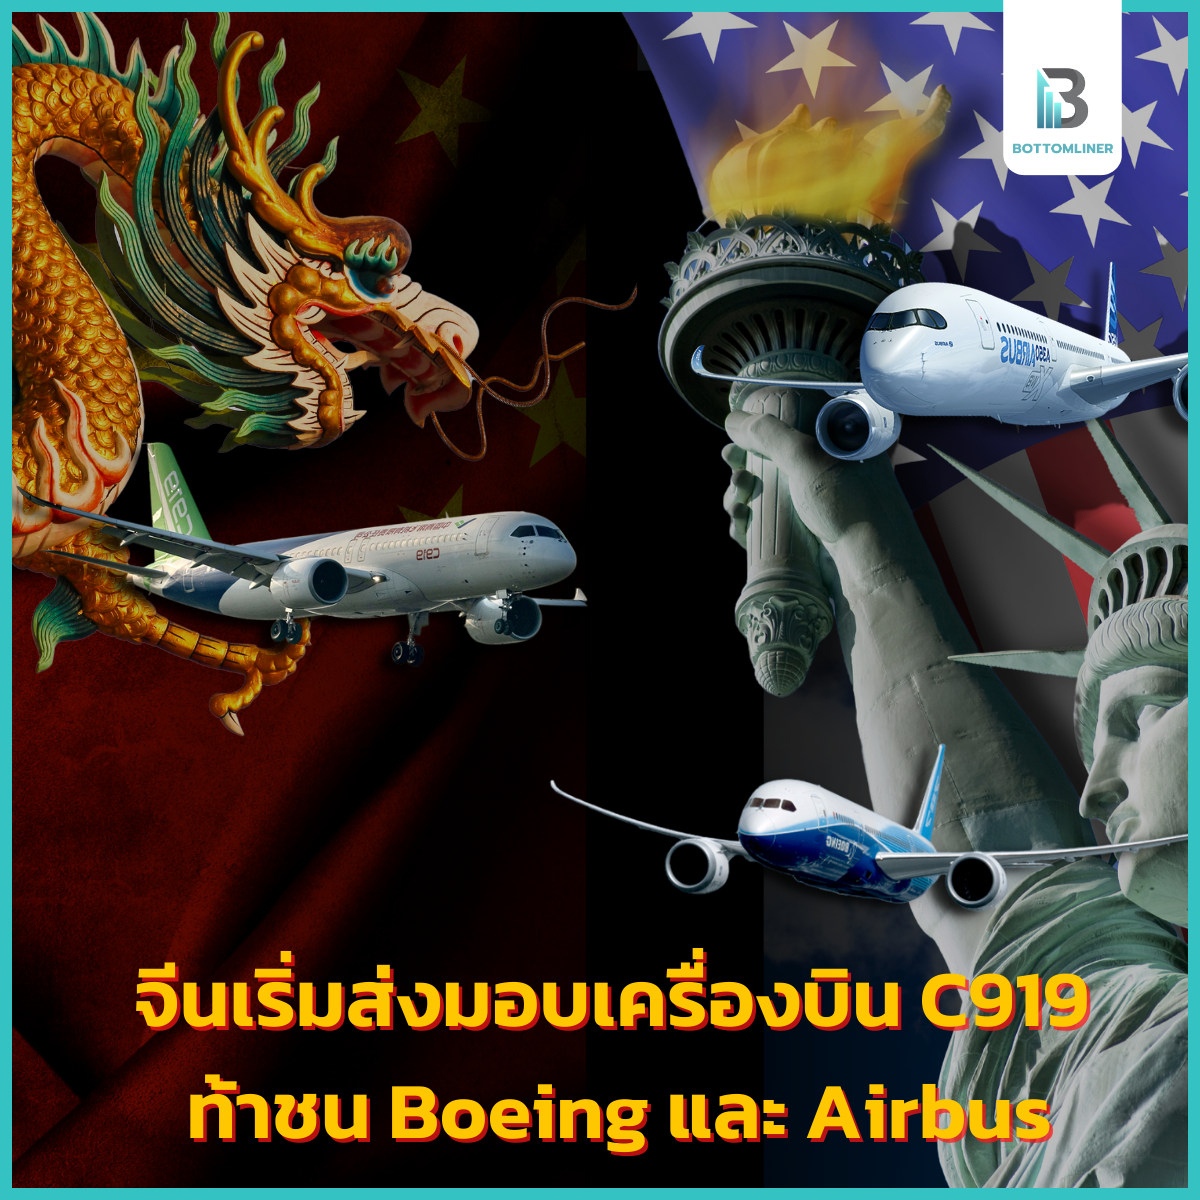 จีนเริ่มส่งมอบเครื่องบิน C919 ท้าชน Boeing และ Airbus